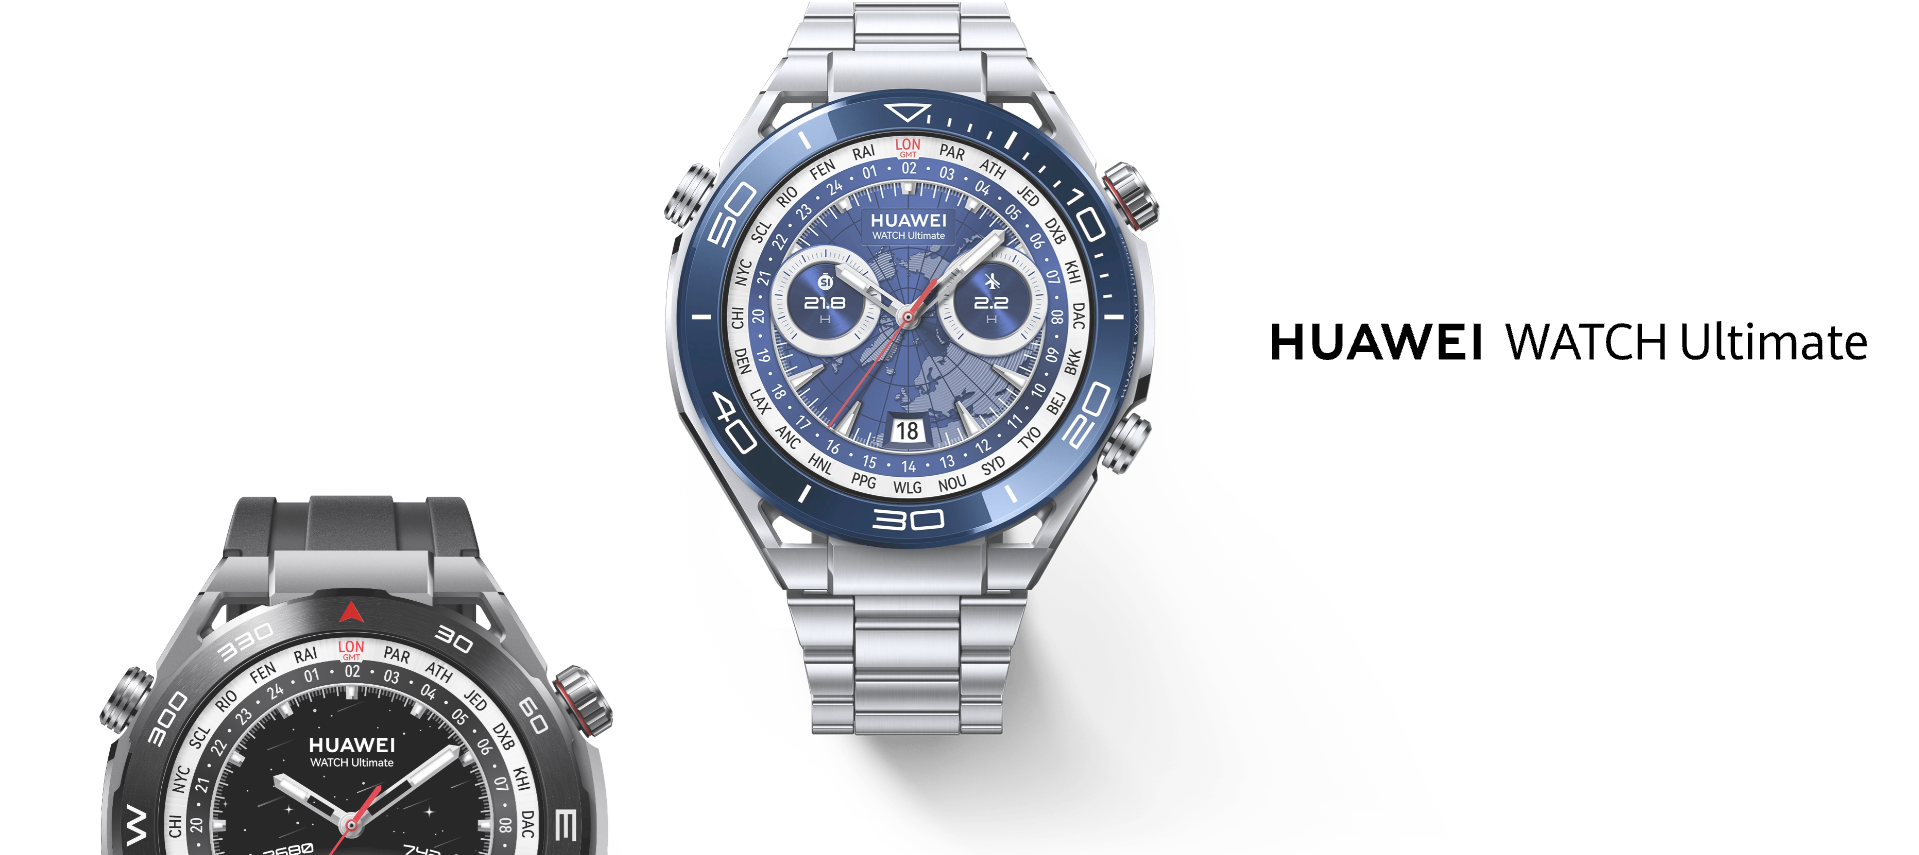 Į Europą atvyksta naujasis „Huawei“ išmanusis laikrodis: įspūdingomis savybėmis pasižymintis „Watch Ultimate“ bus parduodamas pigiau nei Kinijoje